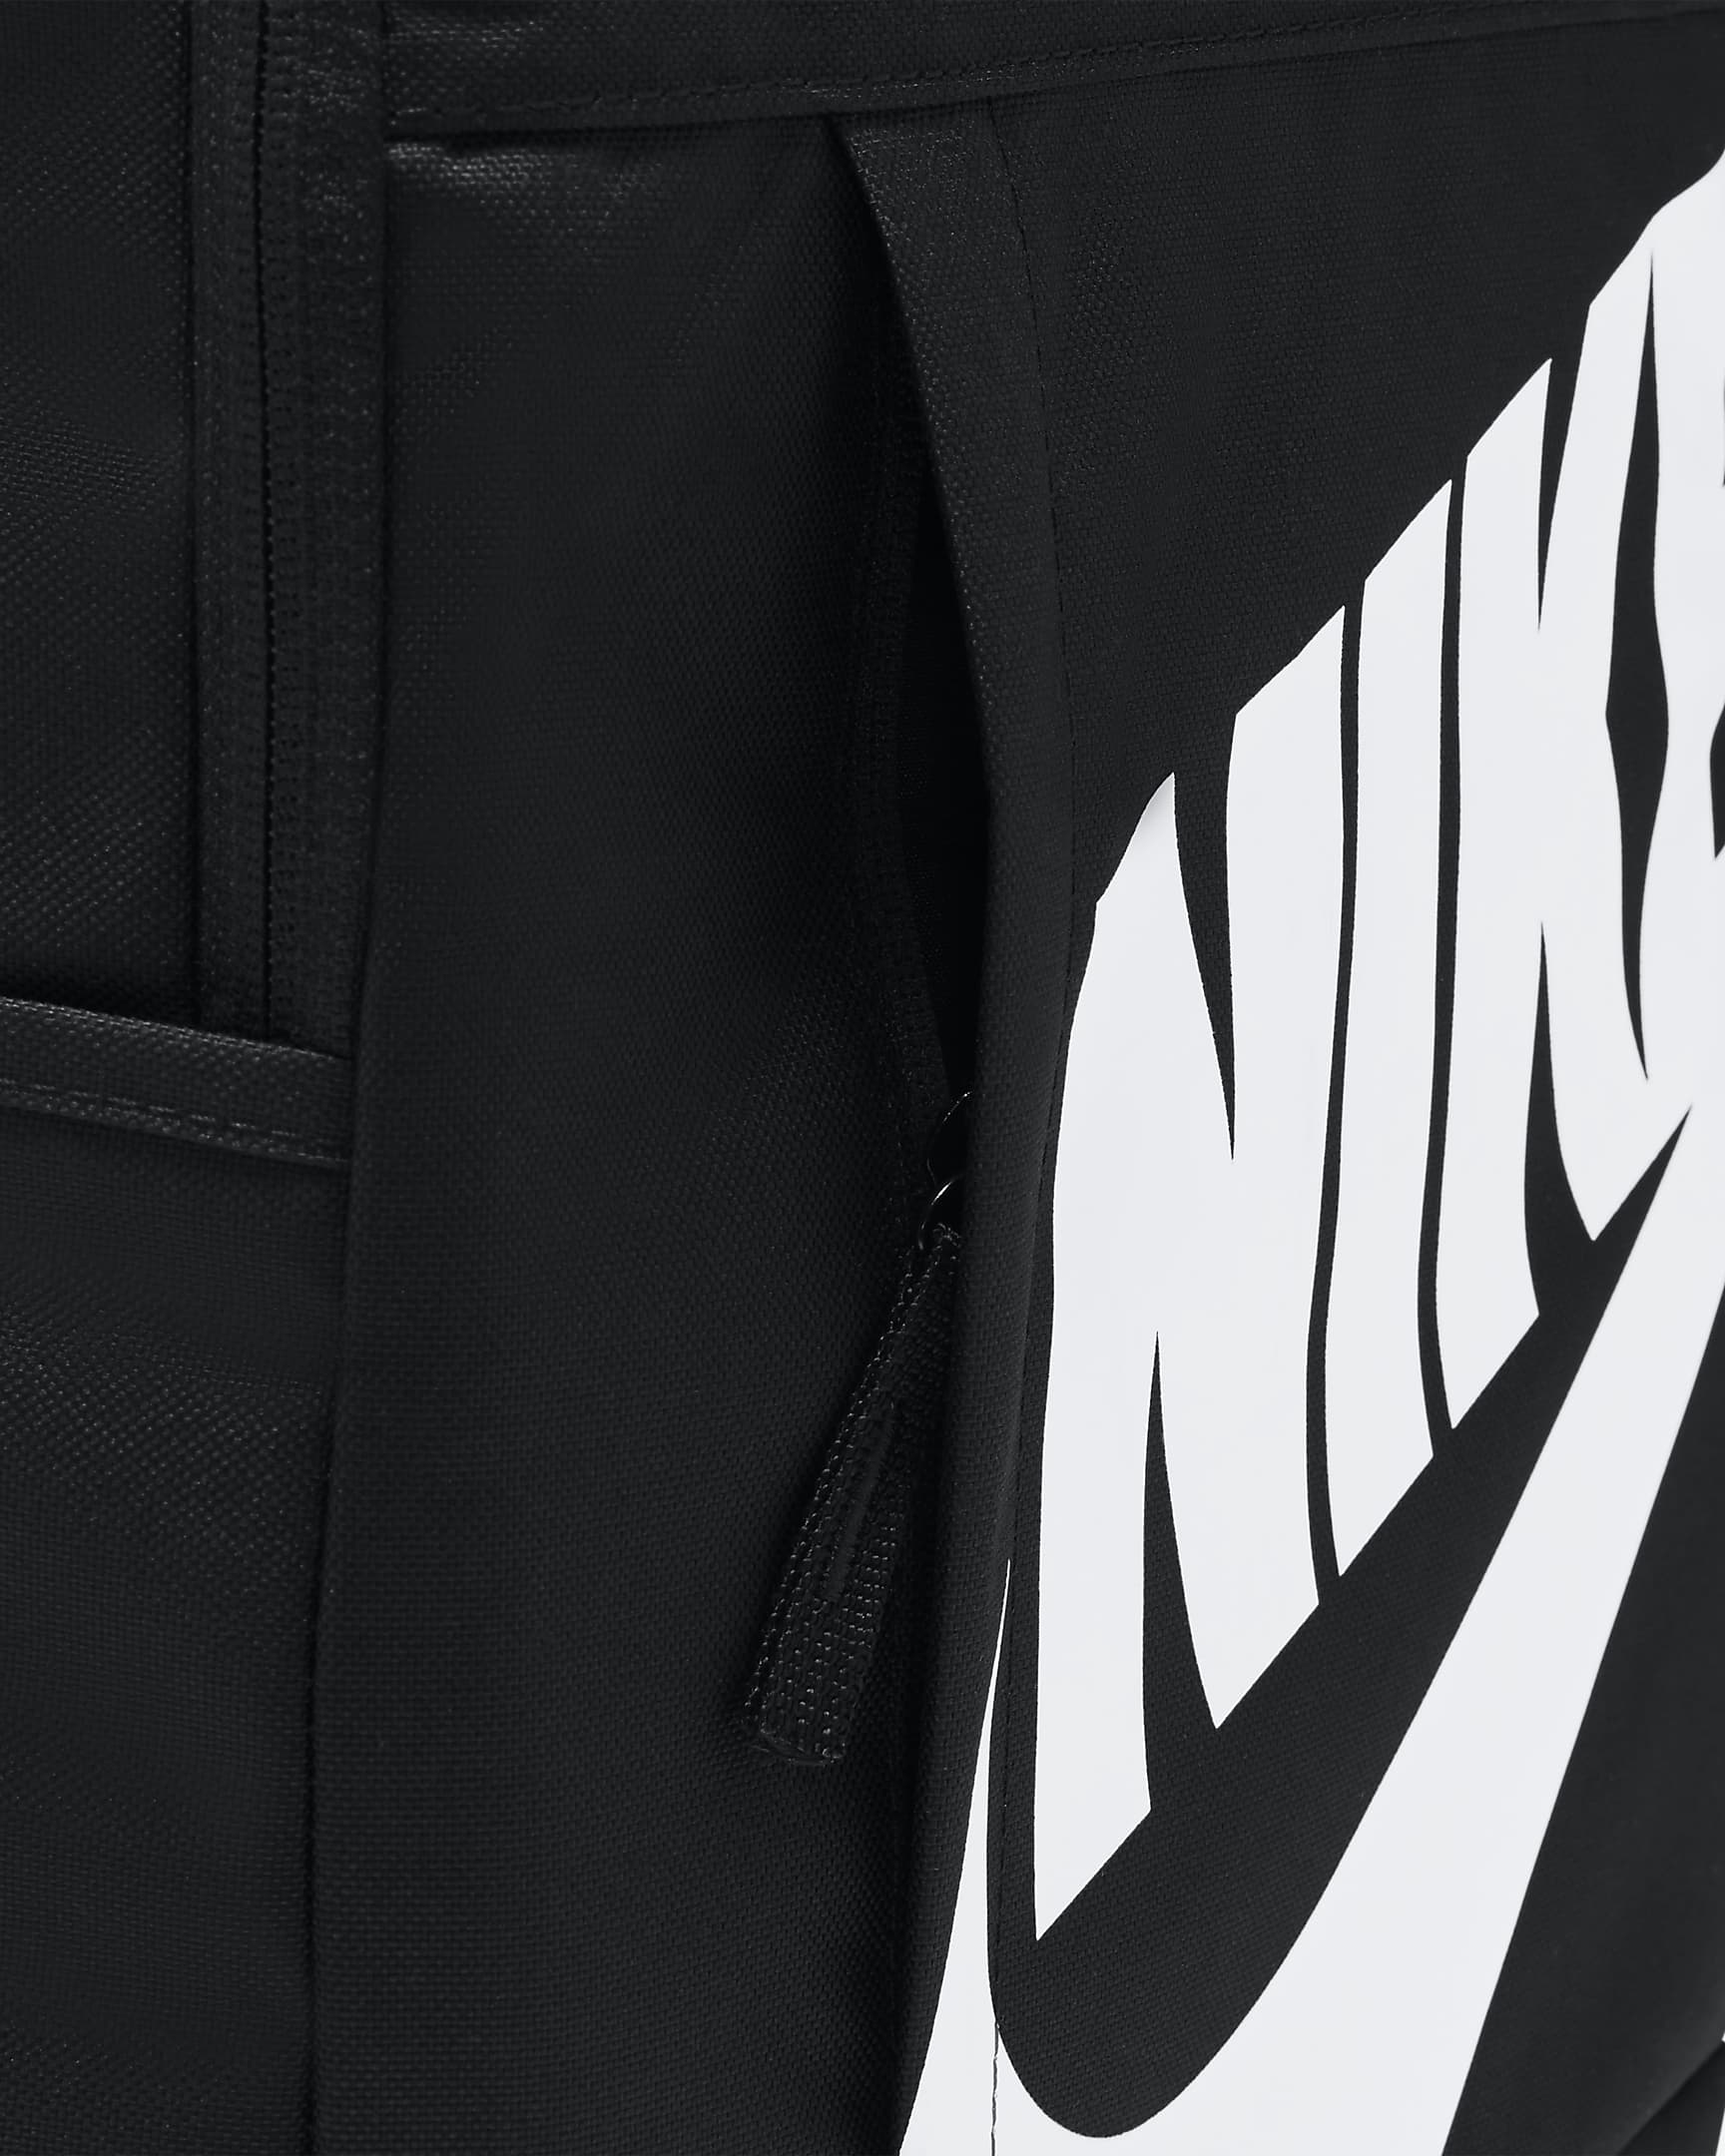 Nike Rucksack (21 l) - Schwarz/Schwarz/Weiß